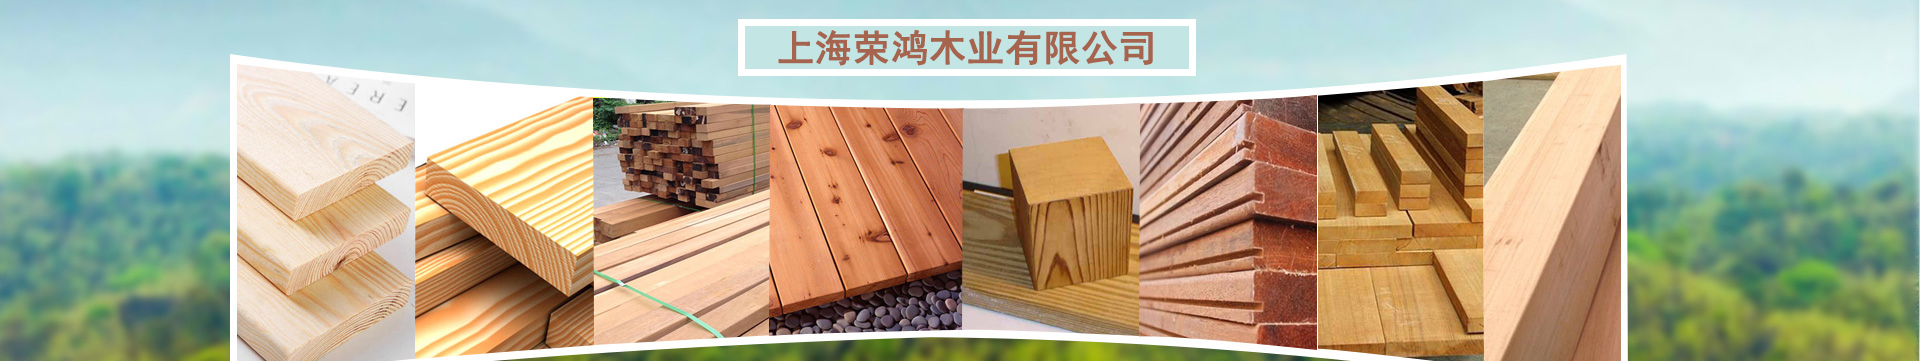 上海榮鴻木業有限公司